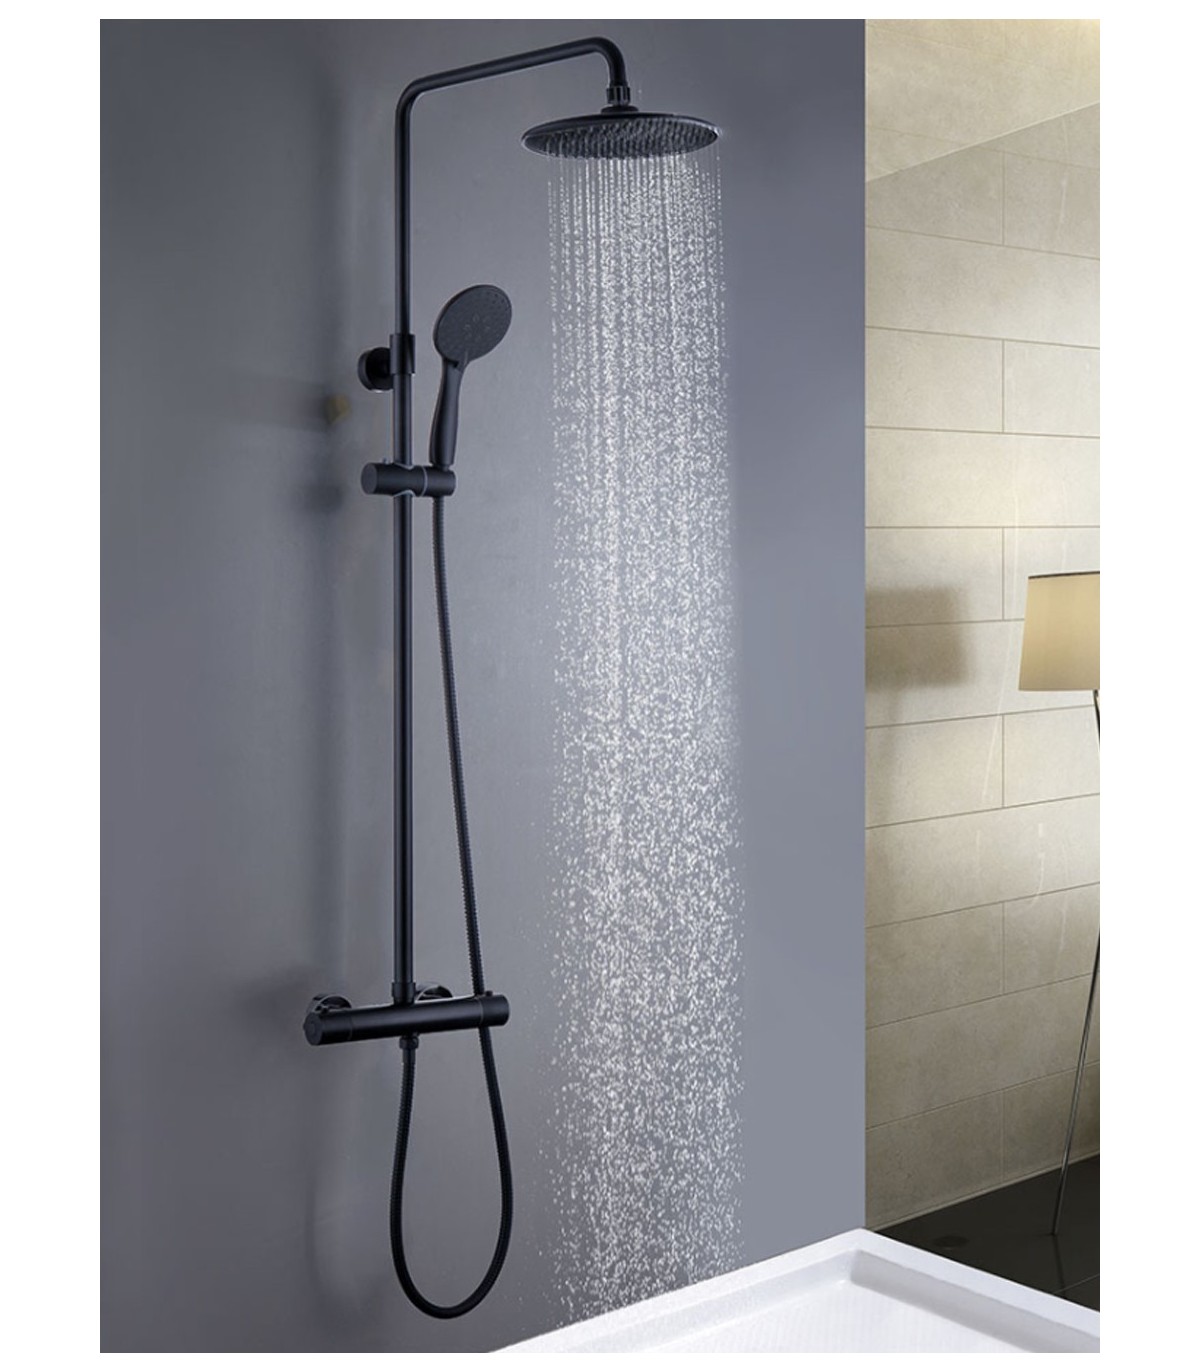 Columna de ducha con tubo redondo extensible de 80 a 120 cm. y grifería  termostática con desviador integrado. Incluye ducha de mano y rociador